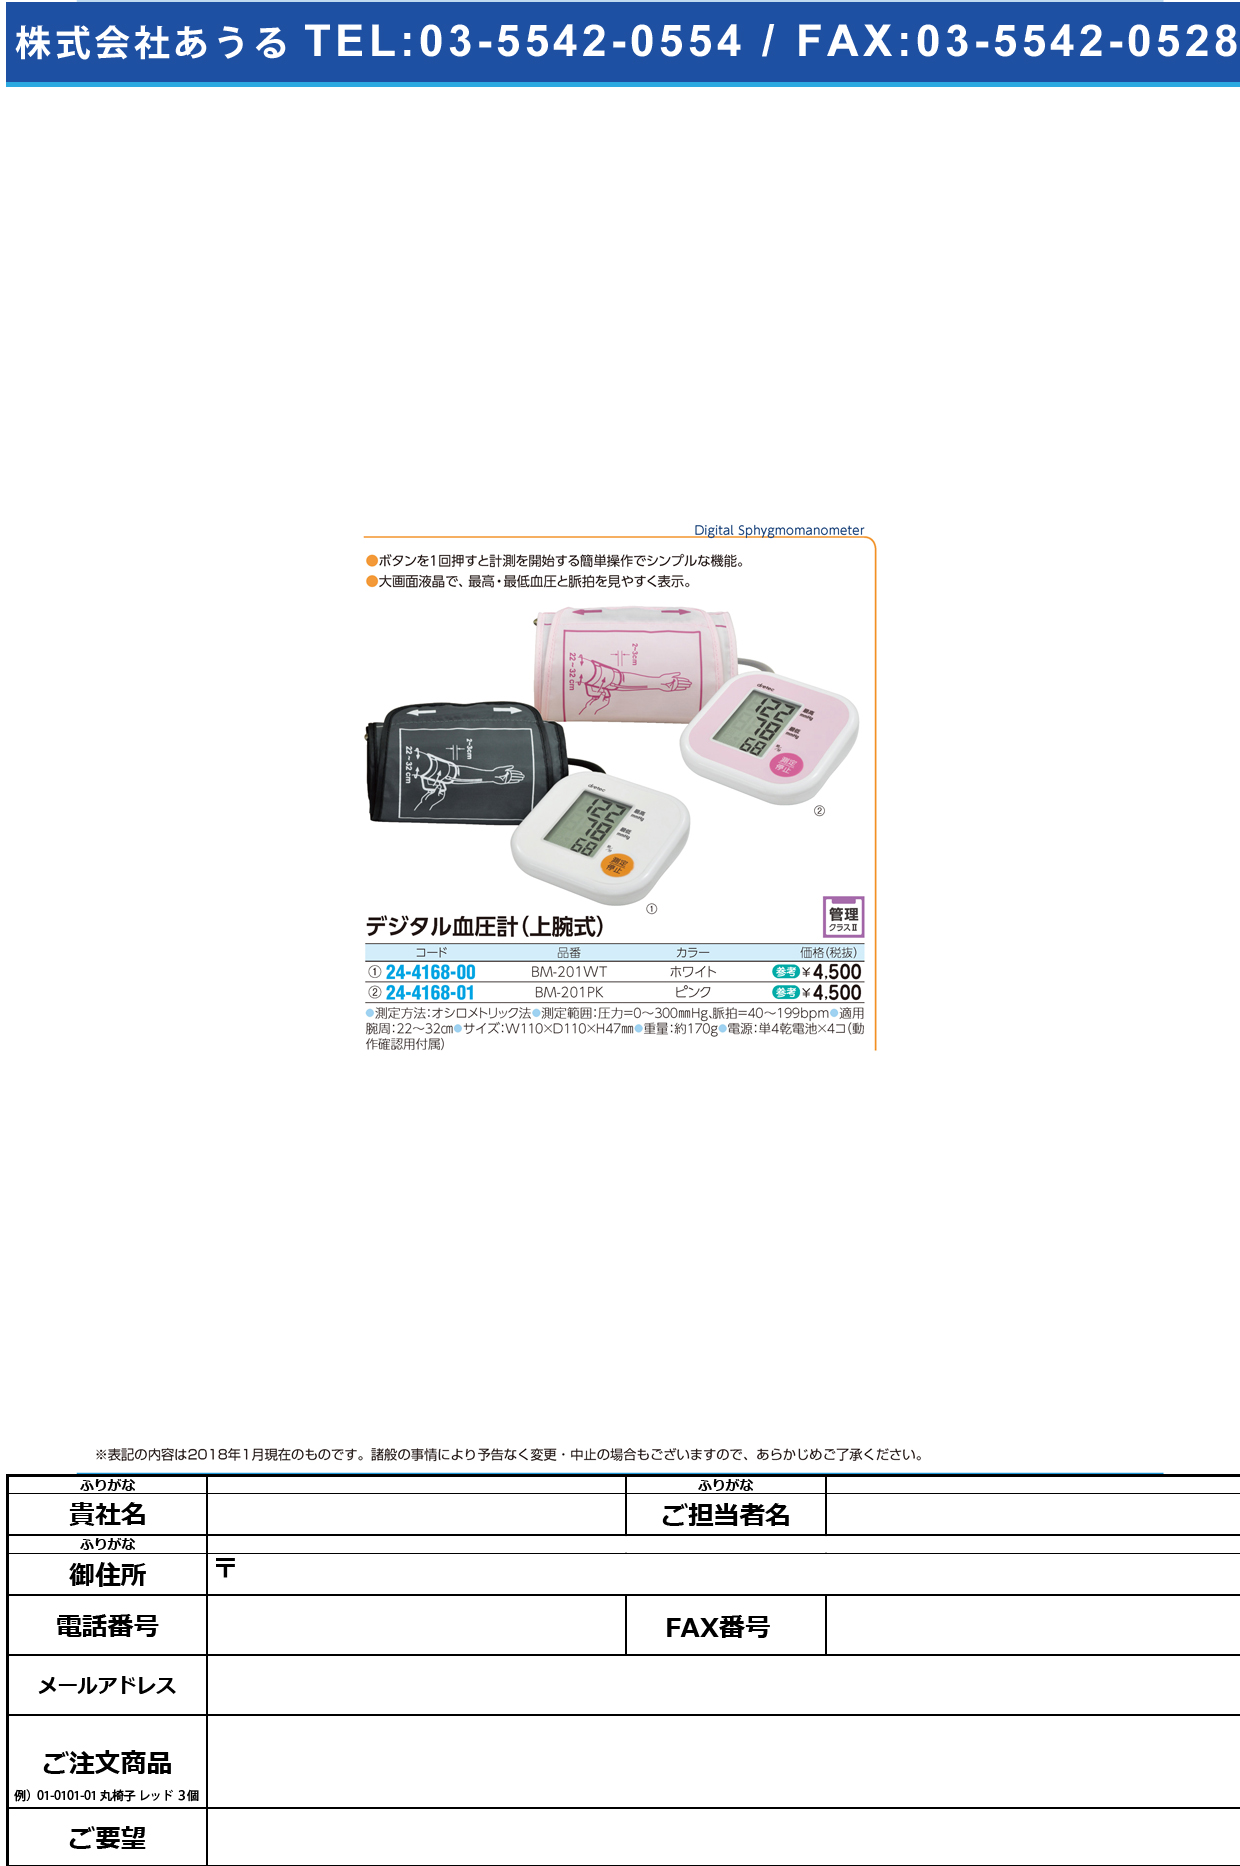 (24-4168-01)デジタル血圧計（上腕式） BM-201PK(ﾋﾟﾝｸ) ﾃﾞｼﾞﾀﾙｹﾂｱﾂｹｲ(ｼﾞｮｳﾜﾝ(ドリテック)【1台単位】【2018年カタログ商品】